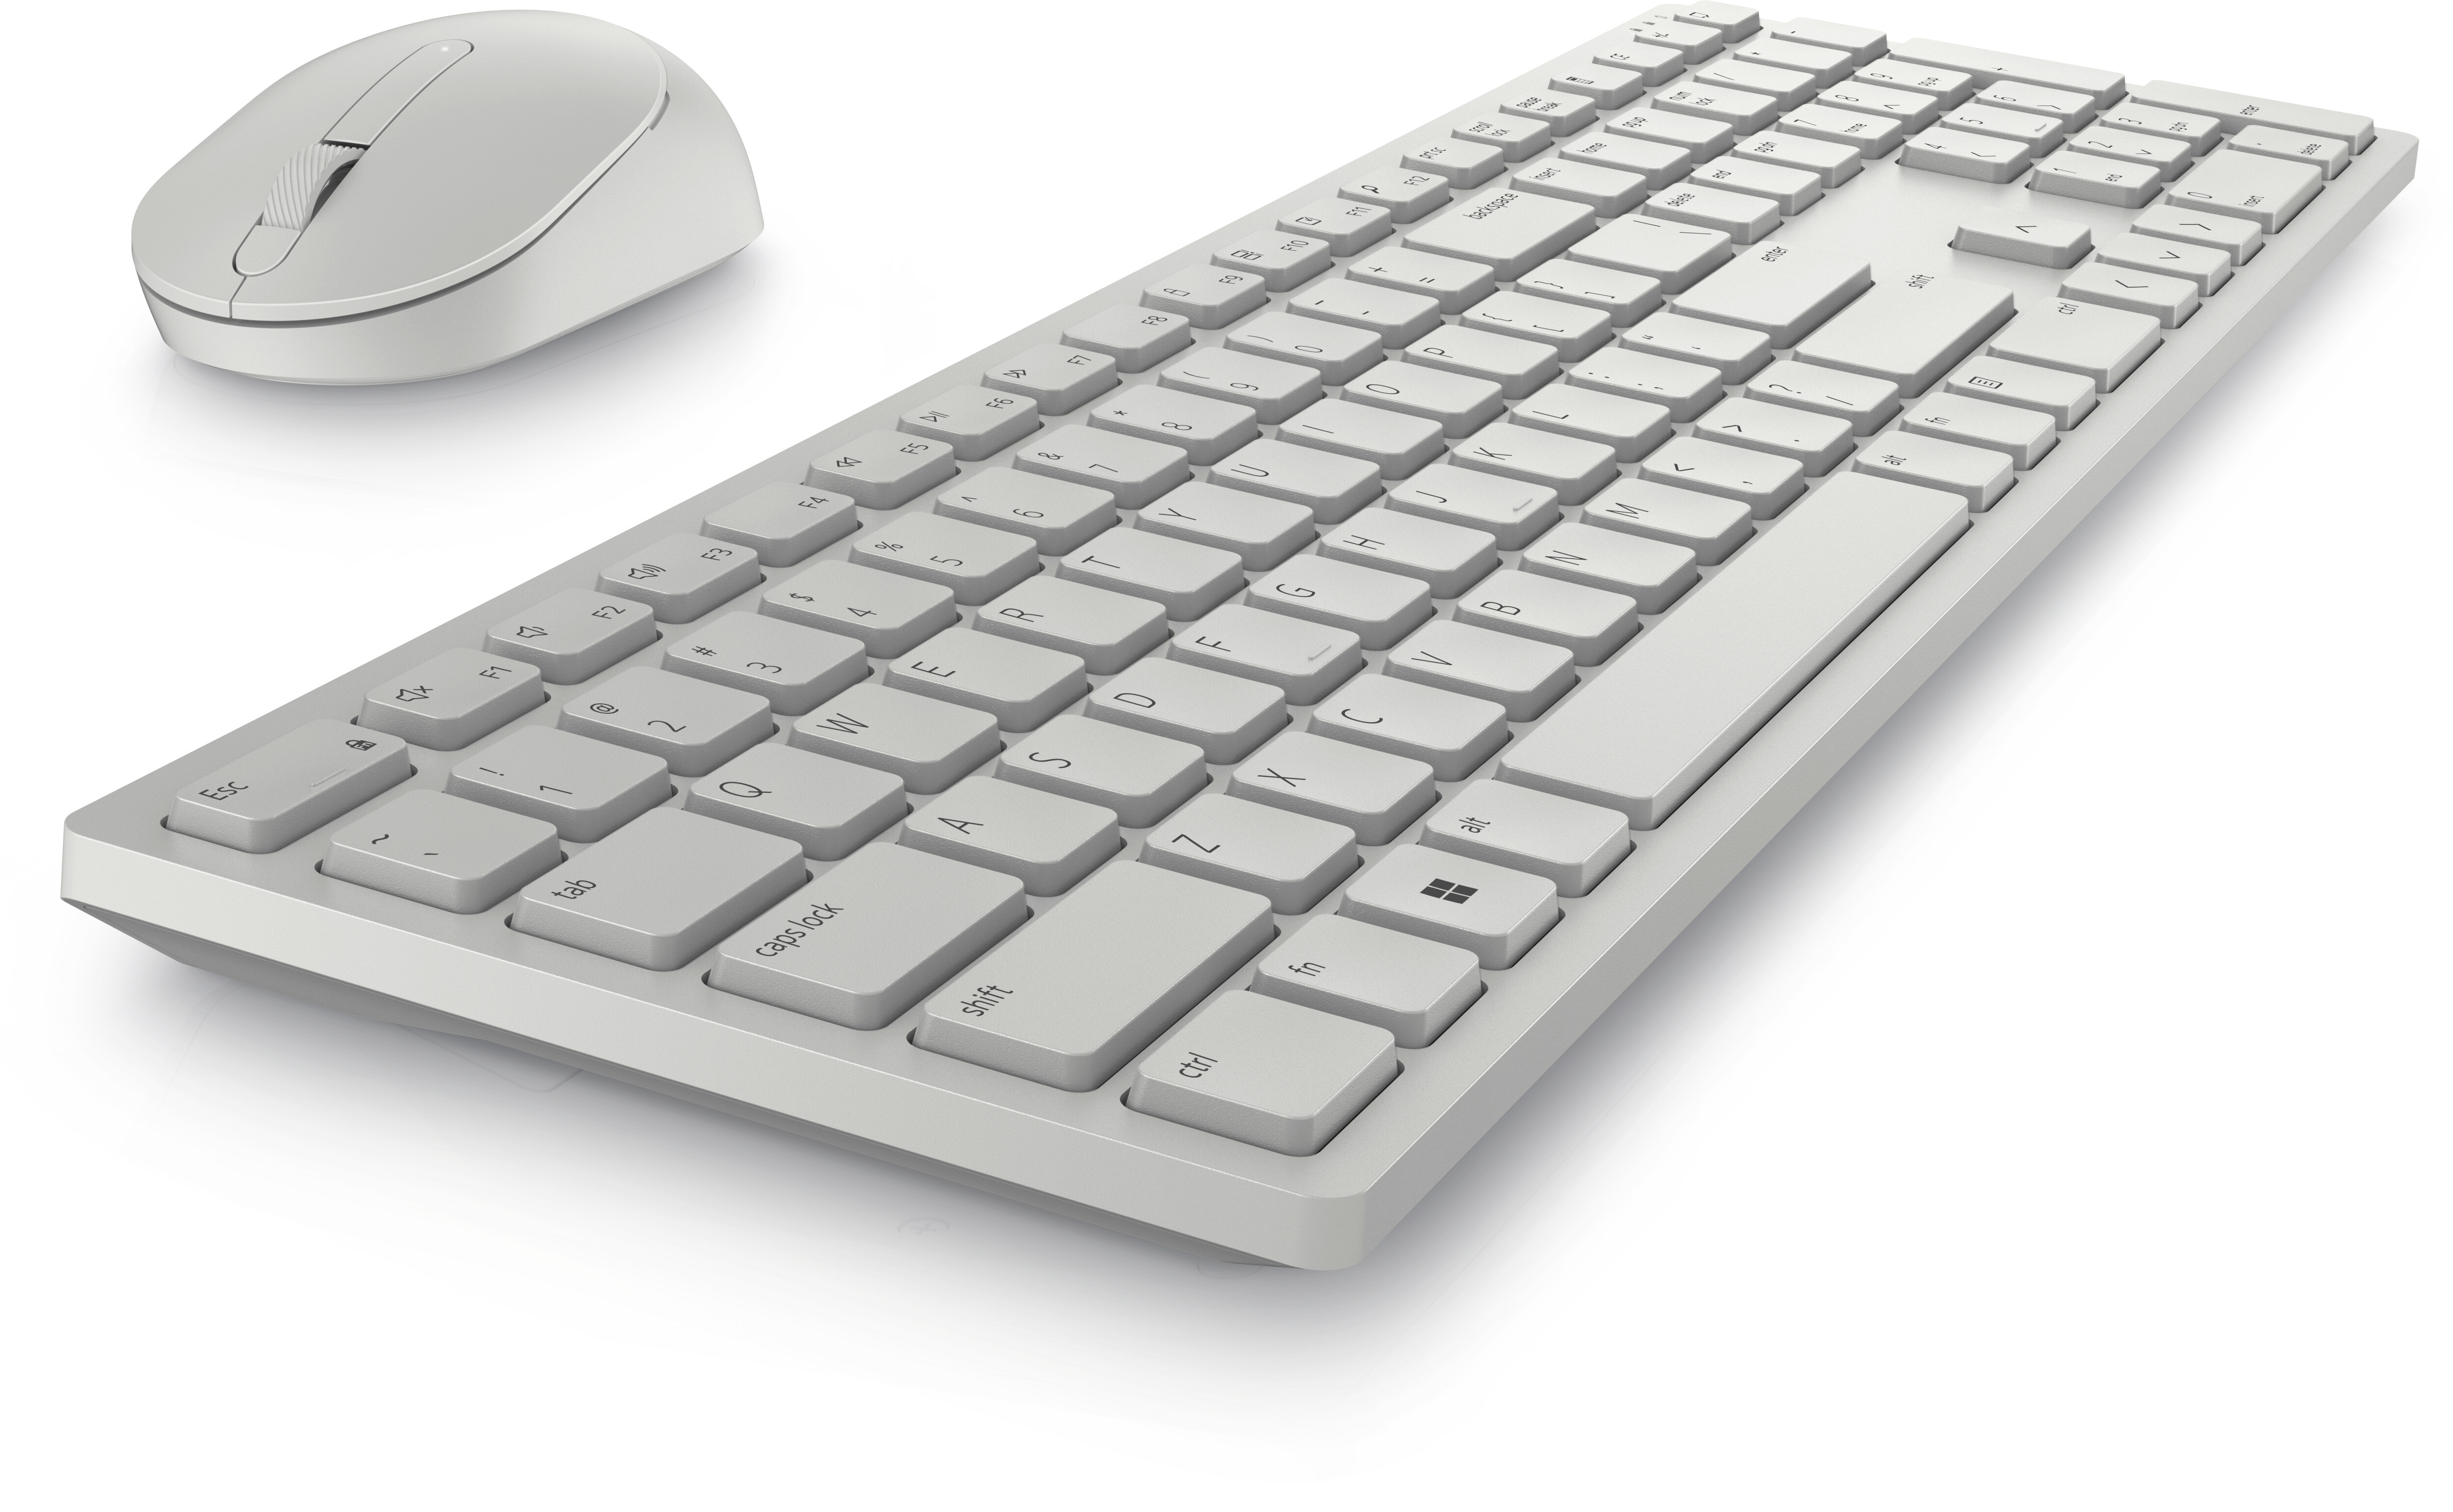 Hol Productie genade Dell Pro draadloos toetsenbord en draadloze muis – KM5221W – Belgisch  (AZERTY) – wit | Dell Nederland